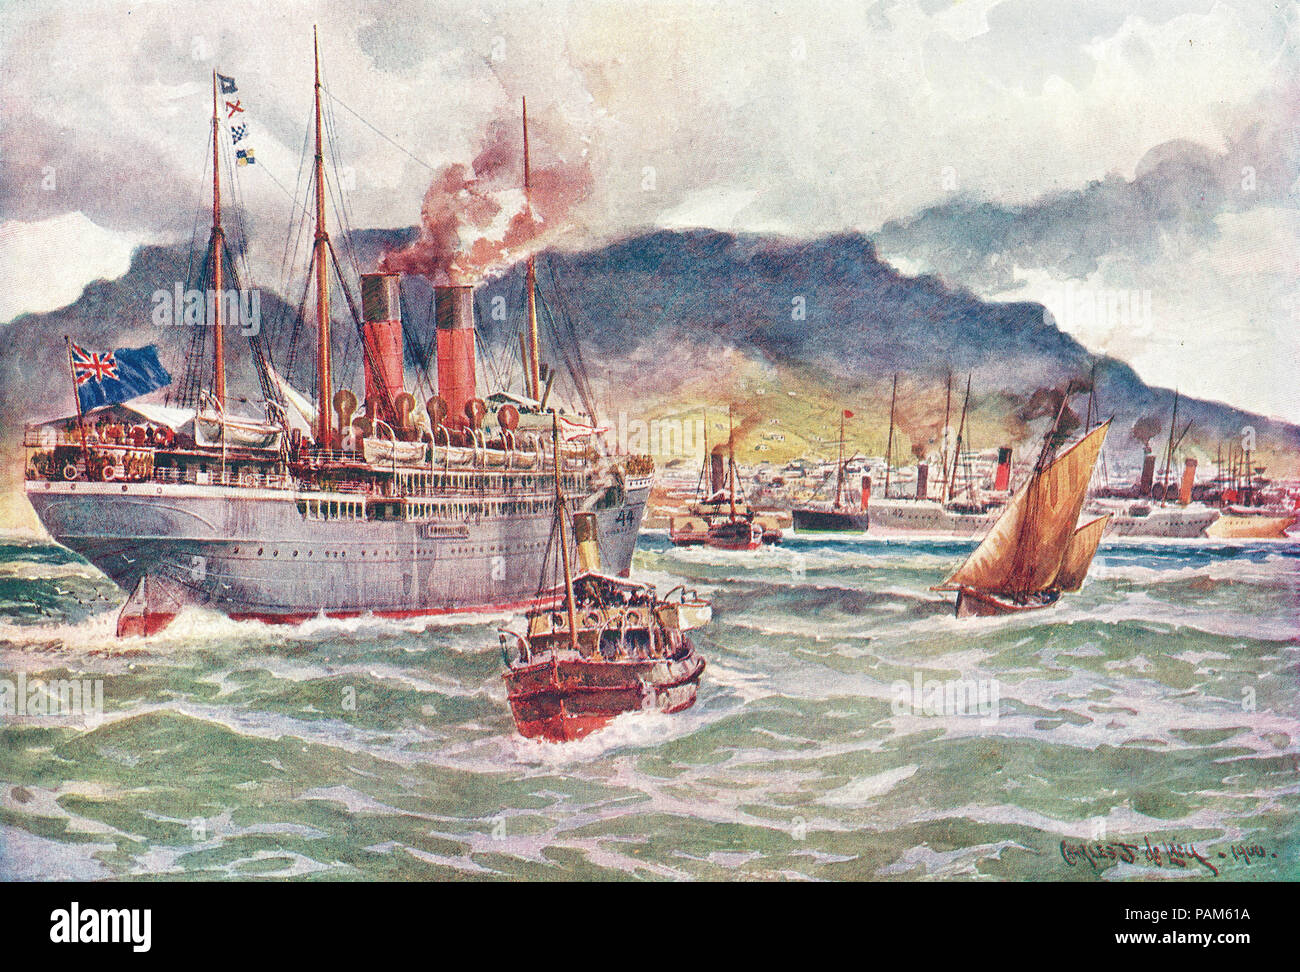 Transporte im Table Bay, Kapstadt, Südafrika, während der südafrikanische Krieg, AKA zweite anglo-boer Krieges, Zweiten Burenkrieg Stockfoto